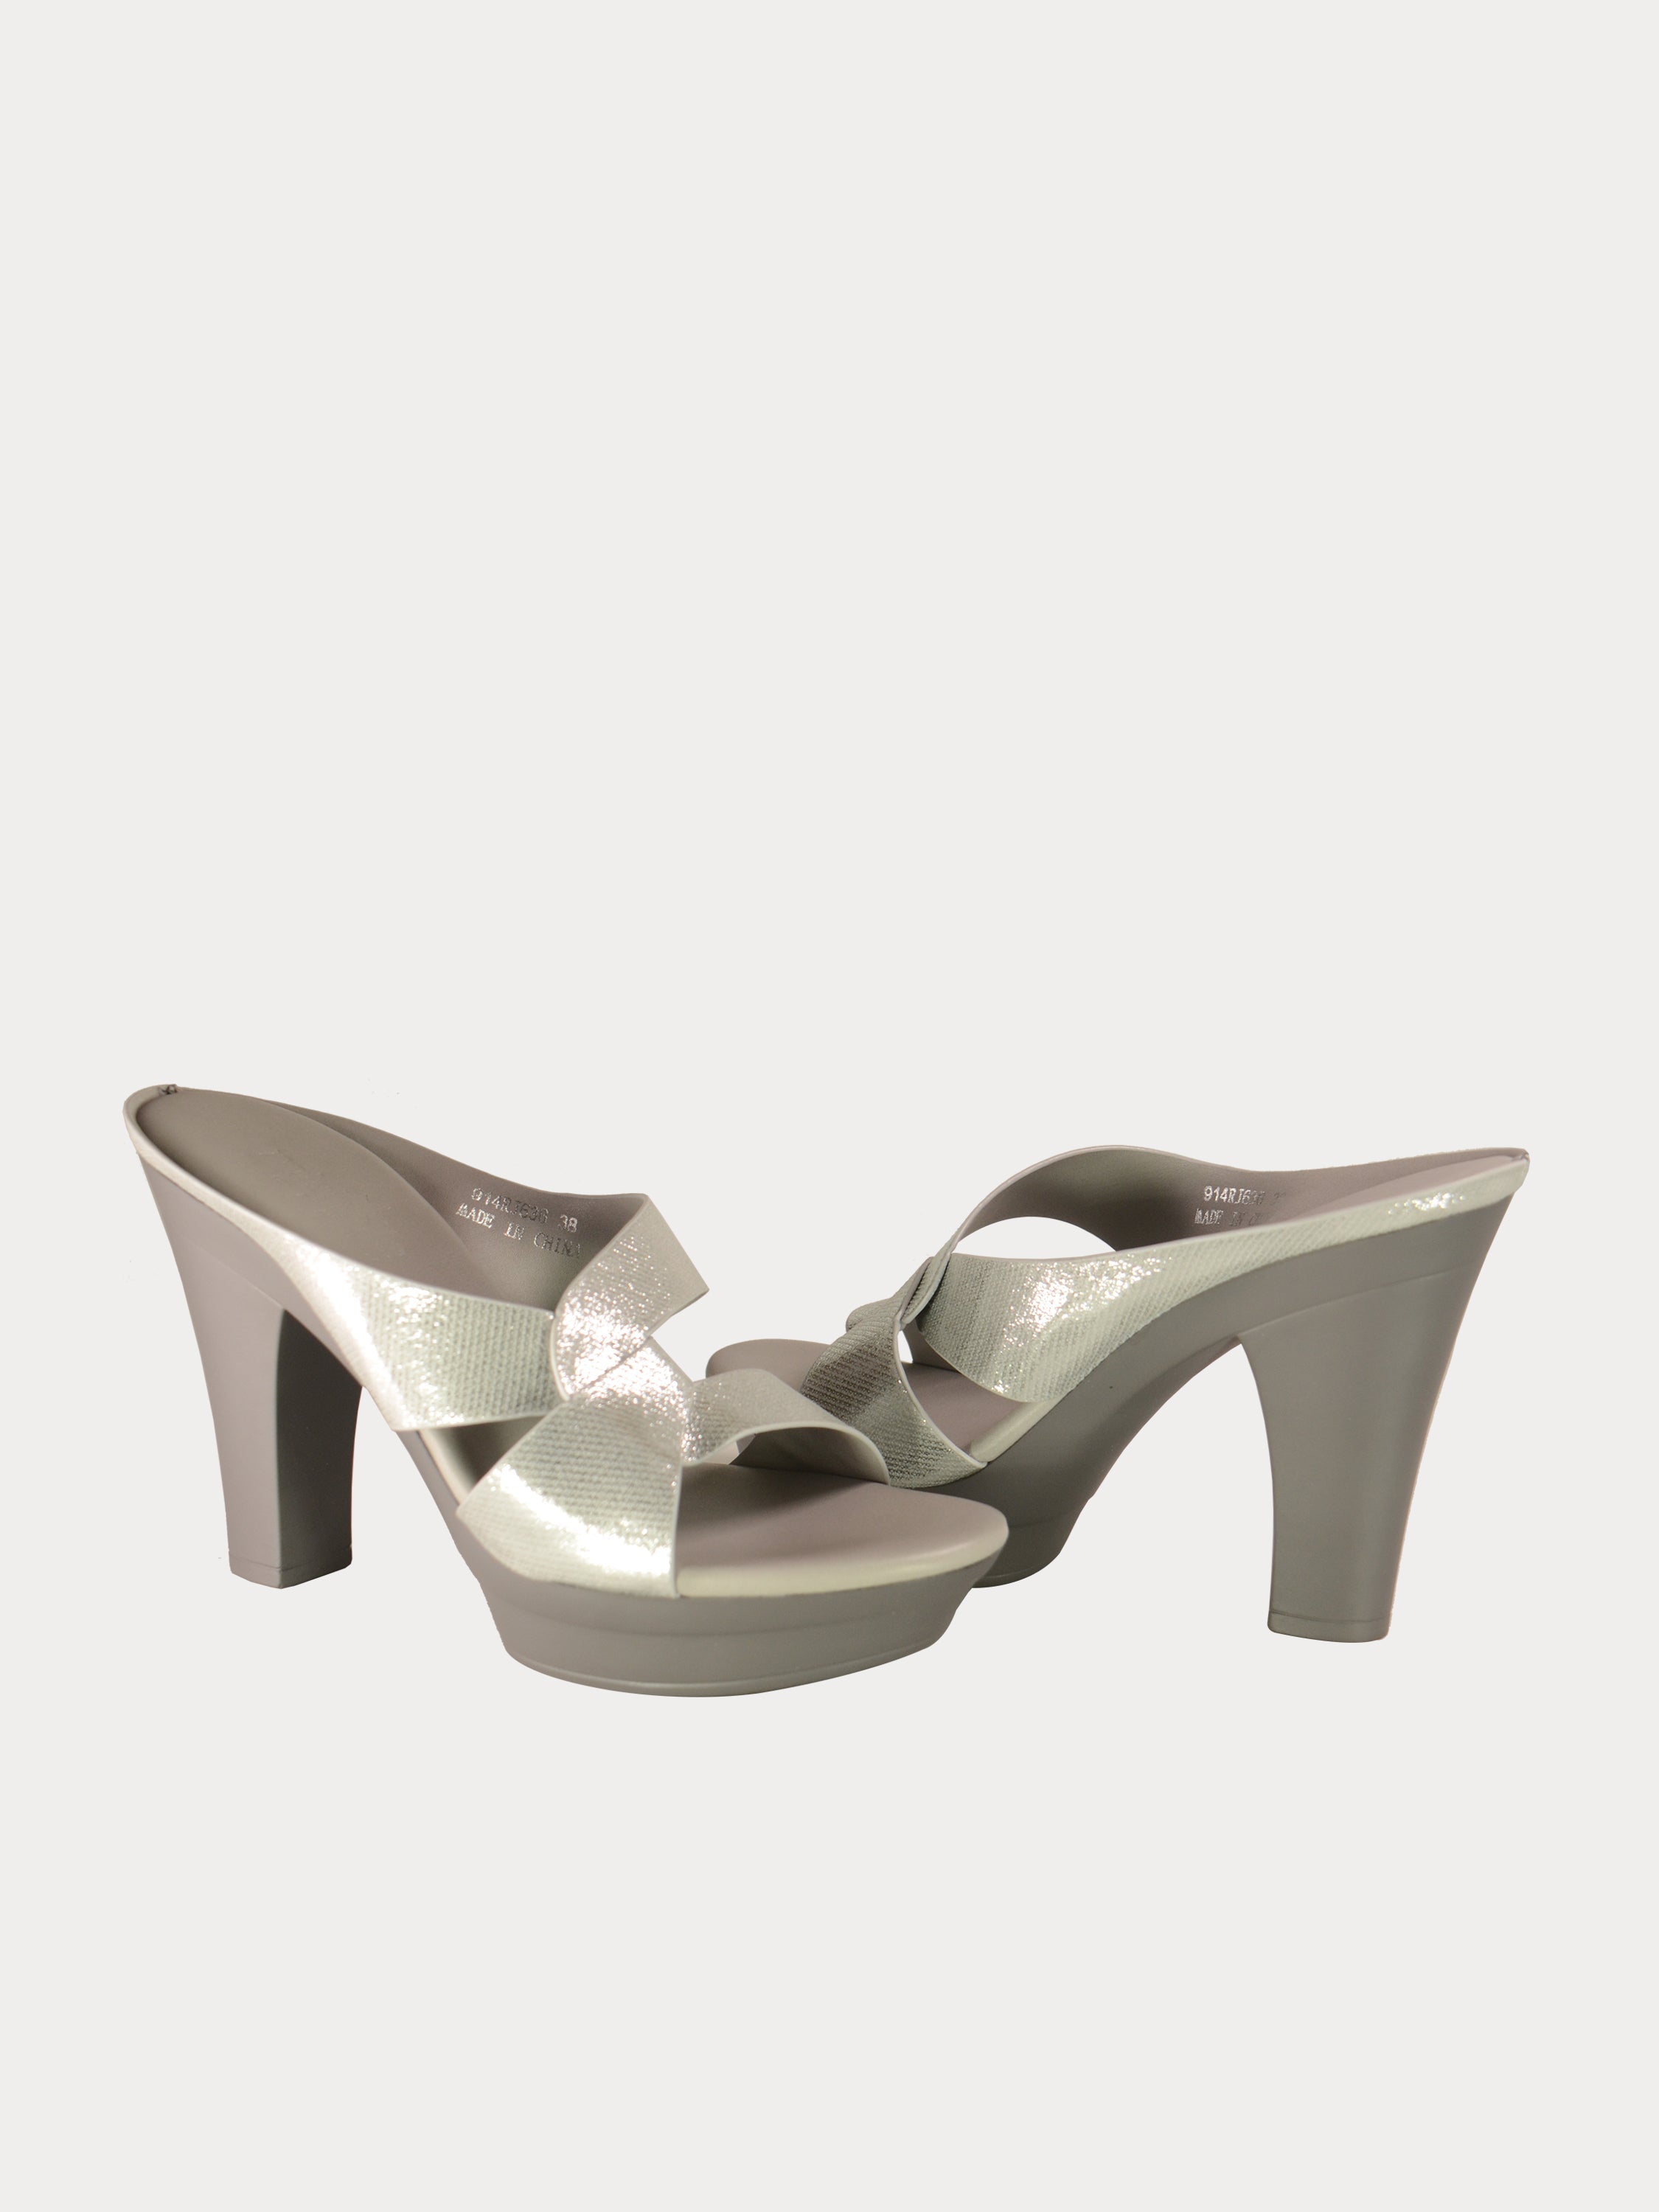 Michelle Morgan 914RJ636 Women's Glitzy Heeled Sandals #color_Silver